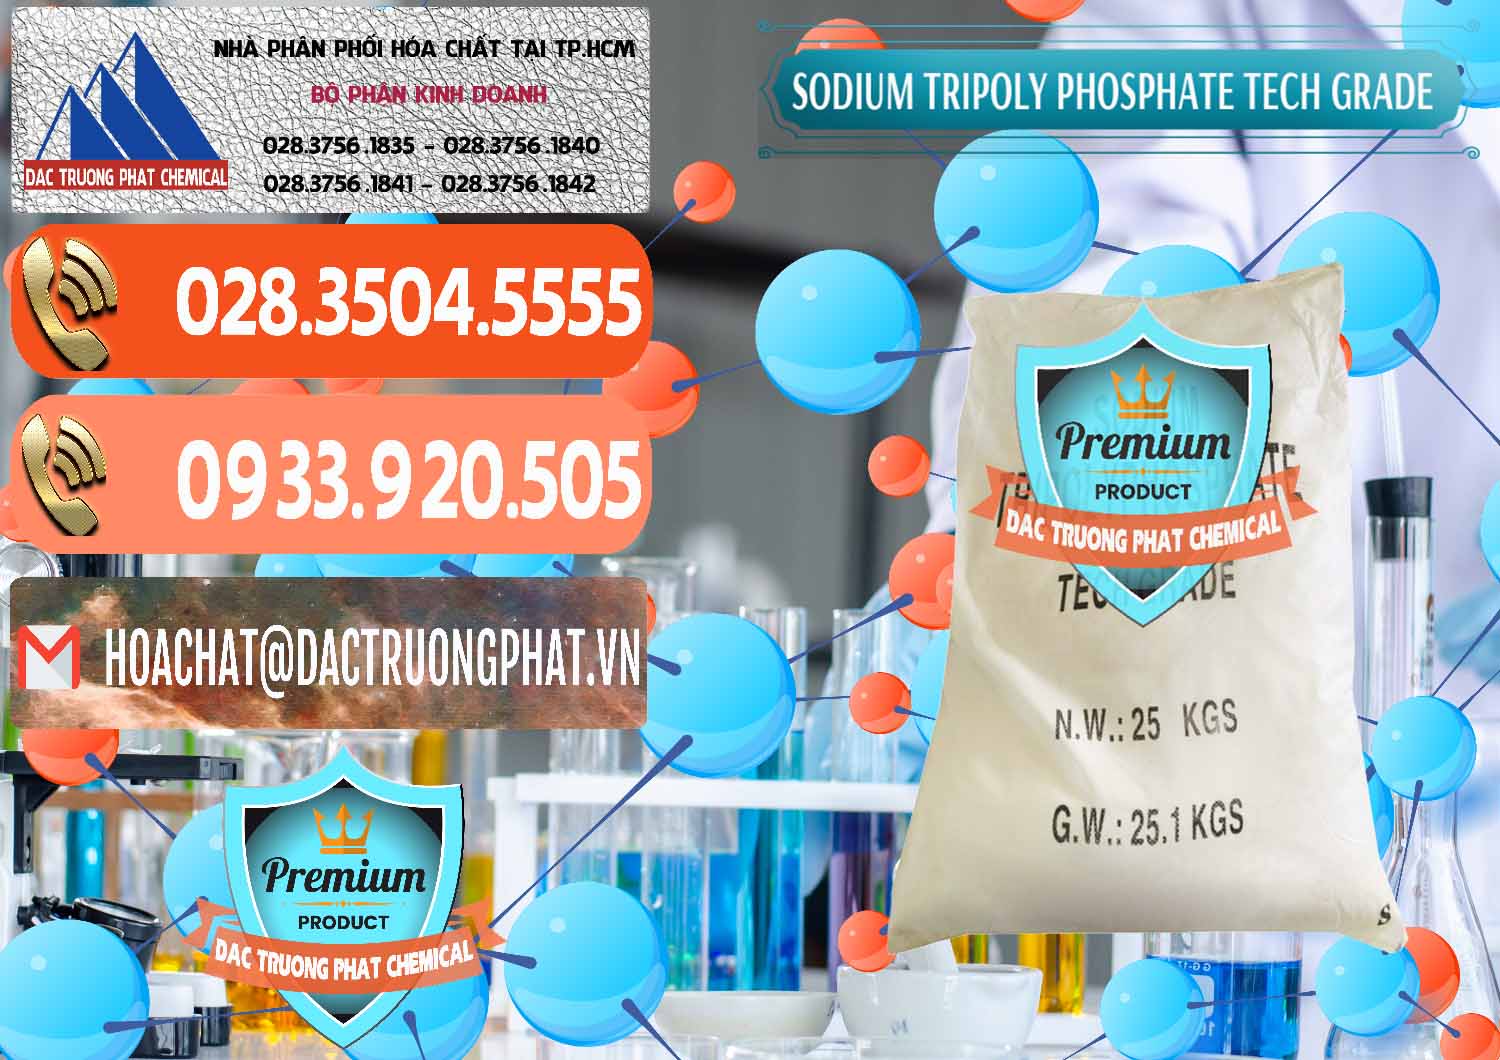 Nơi bán & cung cấp Sodium Tripoly Phosphate - STPP Tech Grade Trung Quốc China - 0453 - Cty bán _ phân phối hóa chất tại TP.HCM - hoachatmientay.com